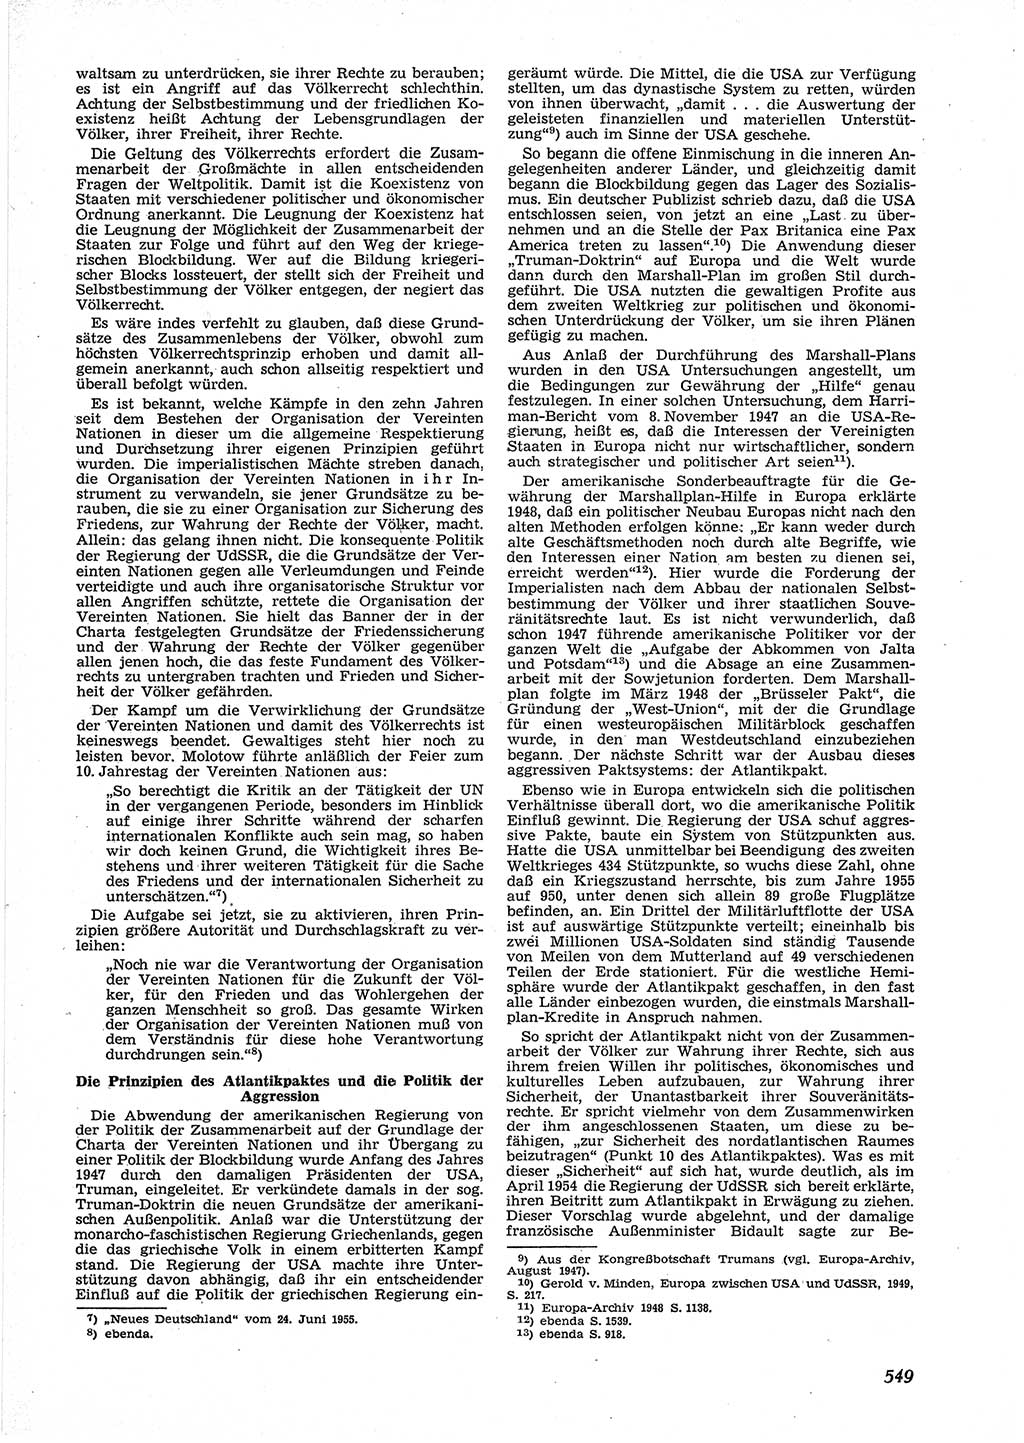 Neue Justiz (NJ), Zeitschrift für Recht und Rechtswissenschaft [Deutsche Demokratische Republik (DDR)], 9. Jahrgang 1955, Seite 549 (NJ DDR 1955, S. 549)